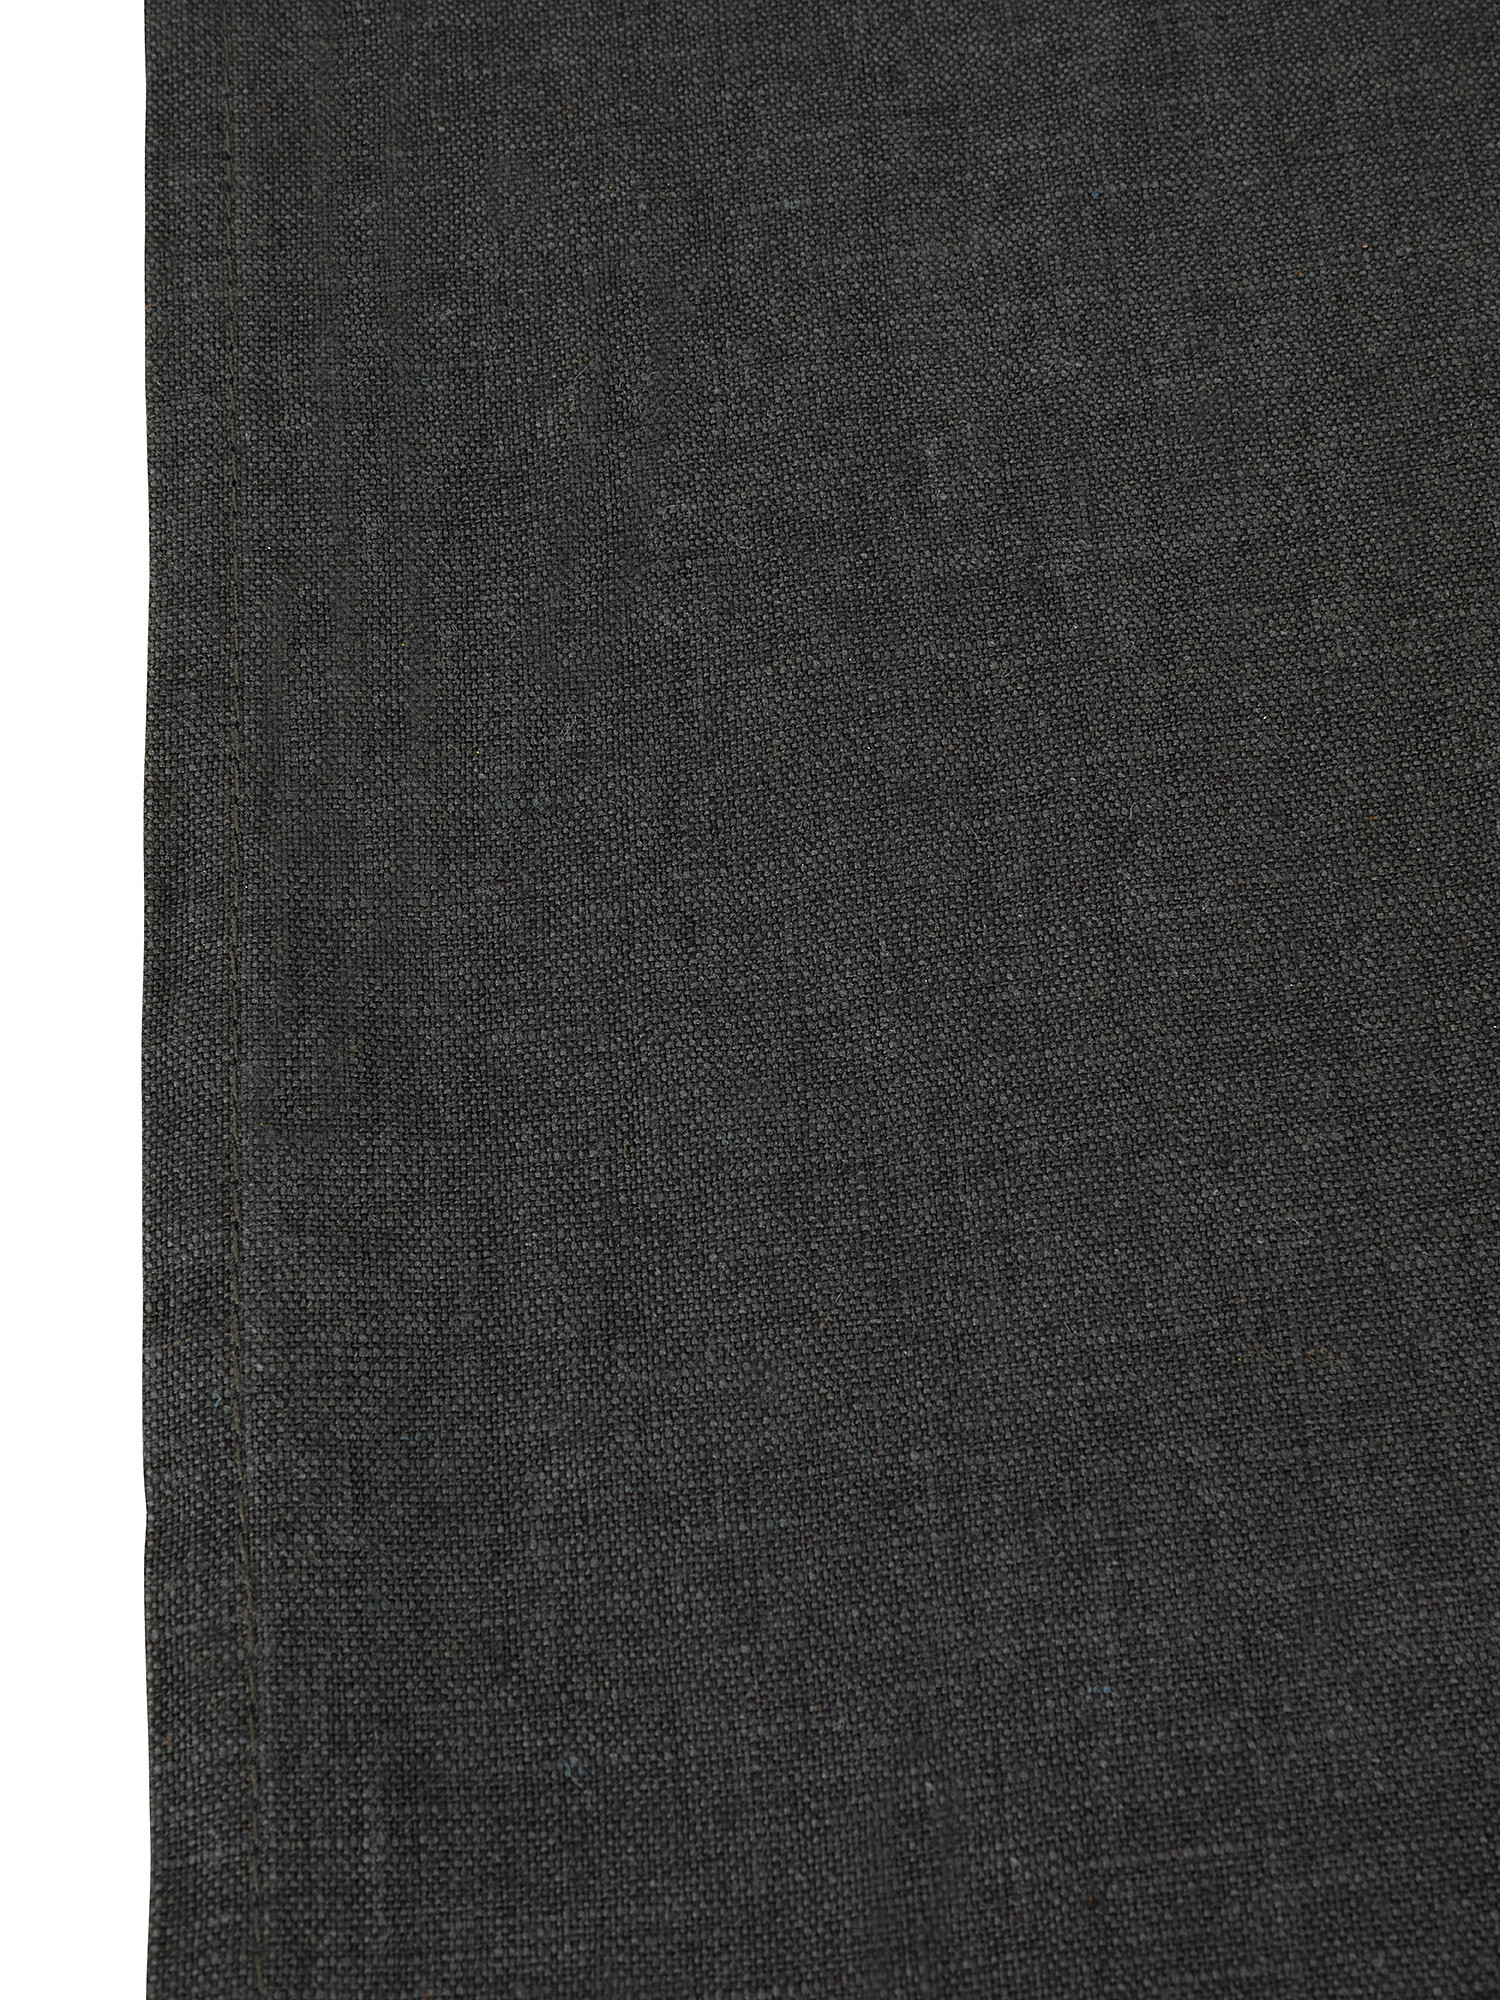 Plain washed linen table runner, Dark Grey, large image number 1